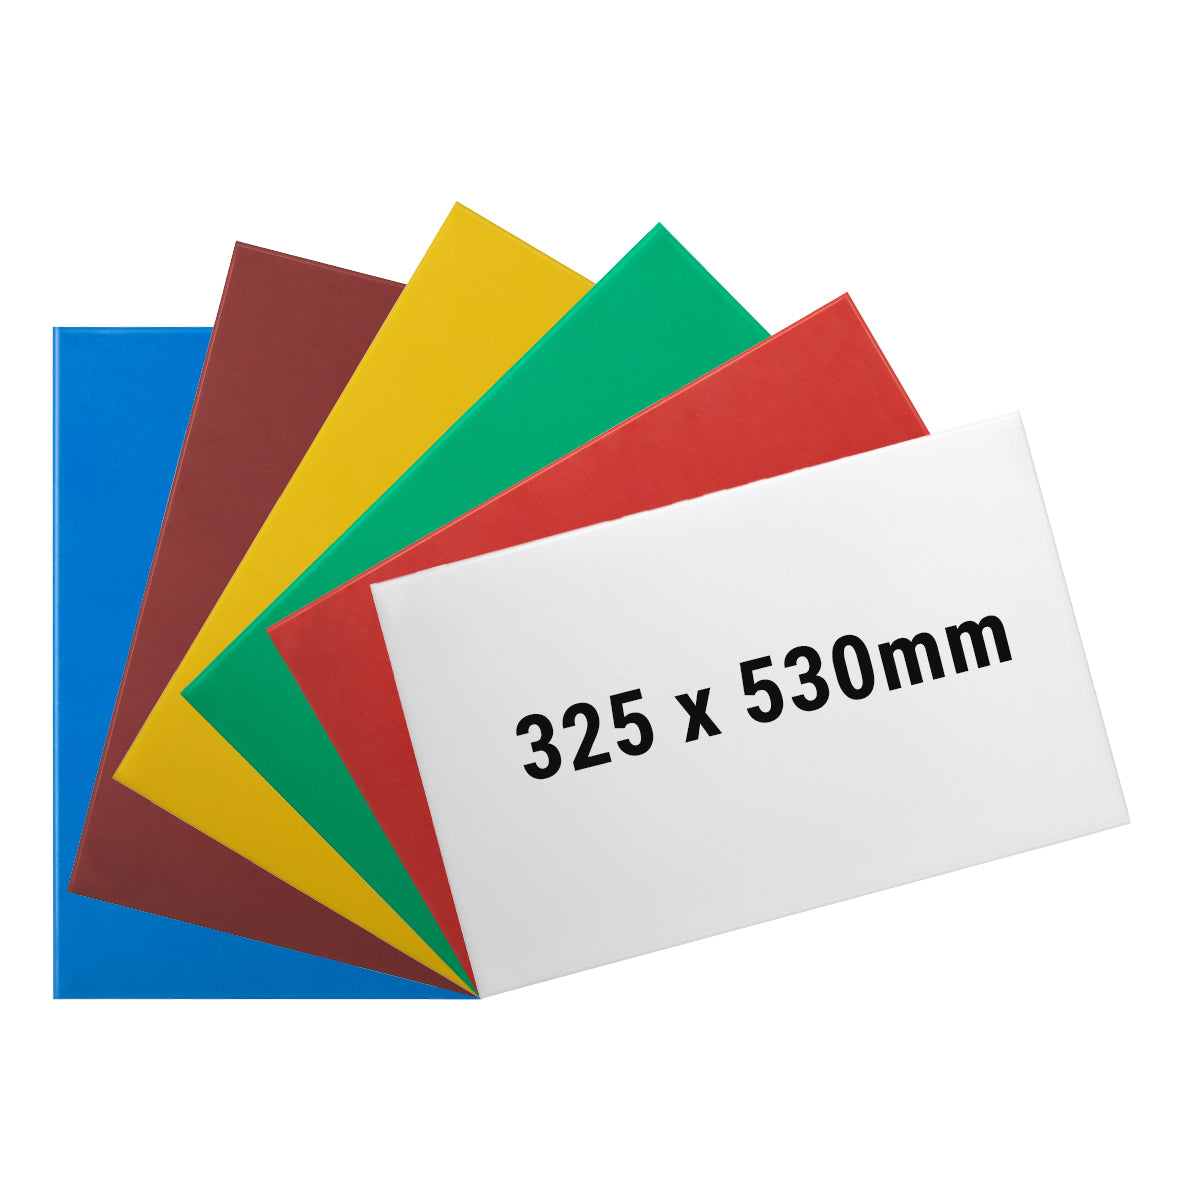 (6 броя) Комплект дъски за рязане - 32,5 x 53 см - Дебелина 1 см - Многоцветни